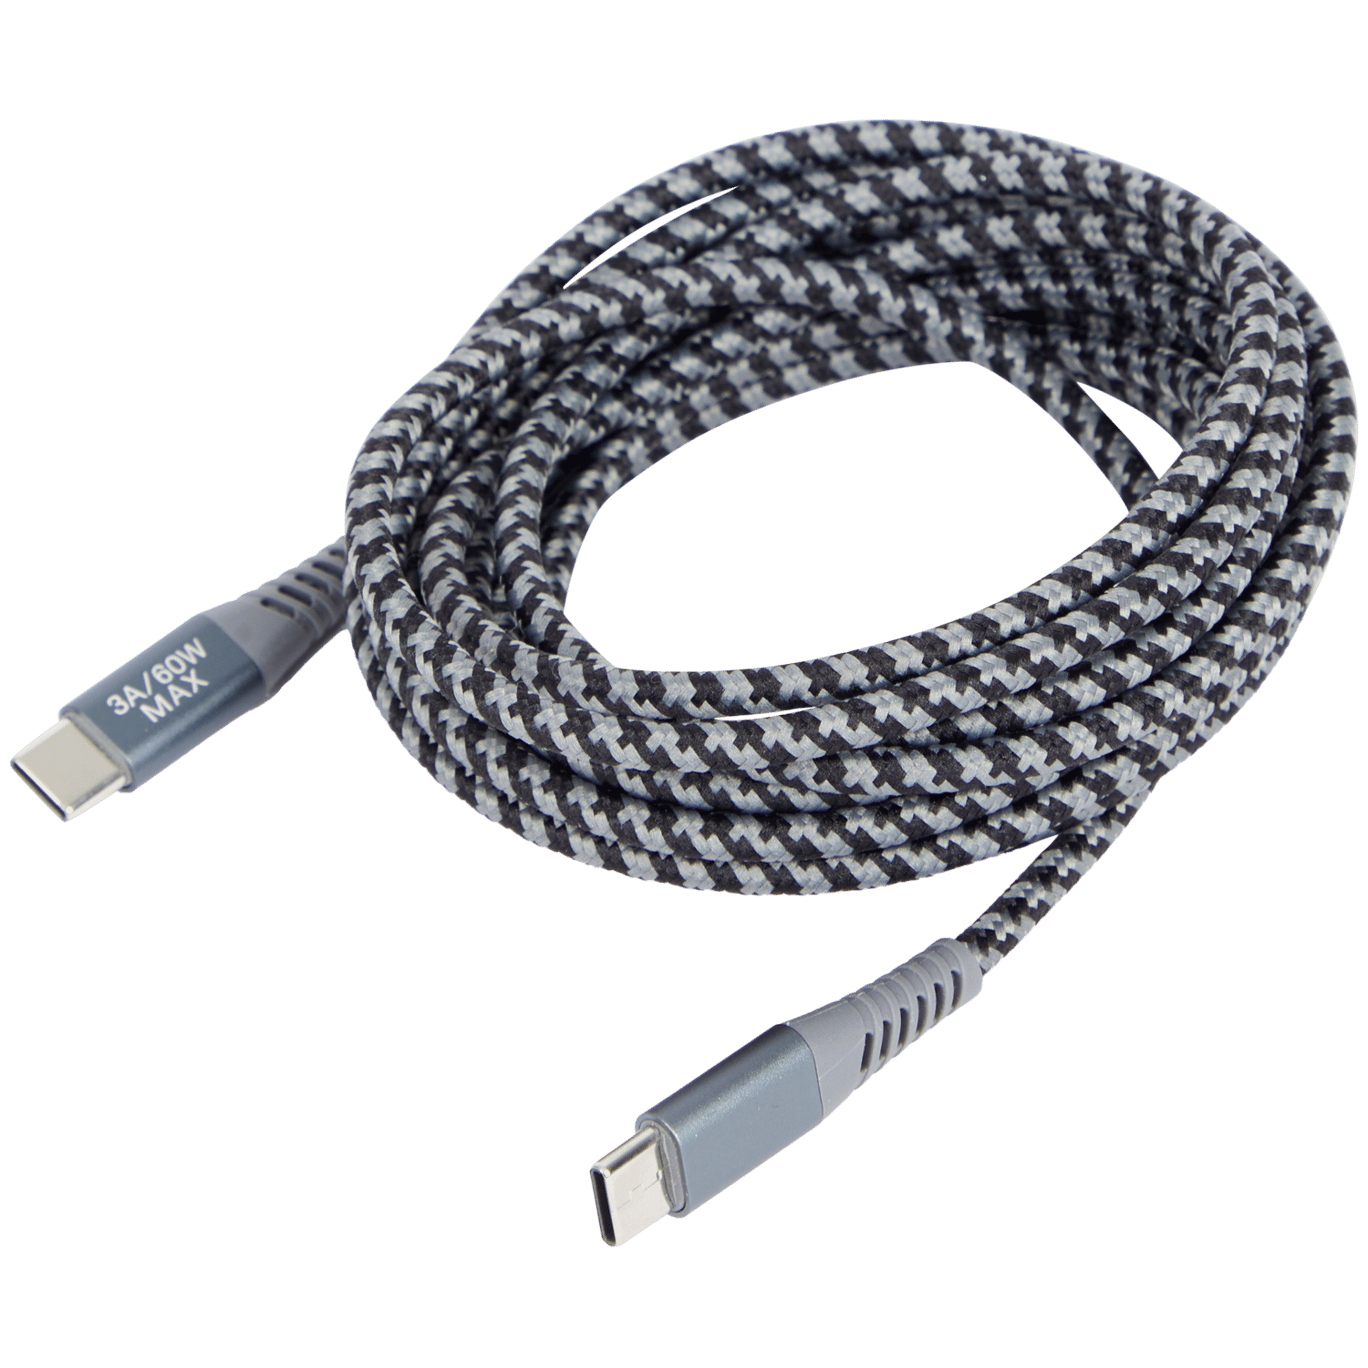 Kabel do ładowania i przesyłania danych Sologic USB-C do USB-C